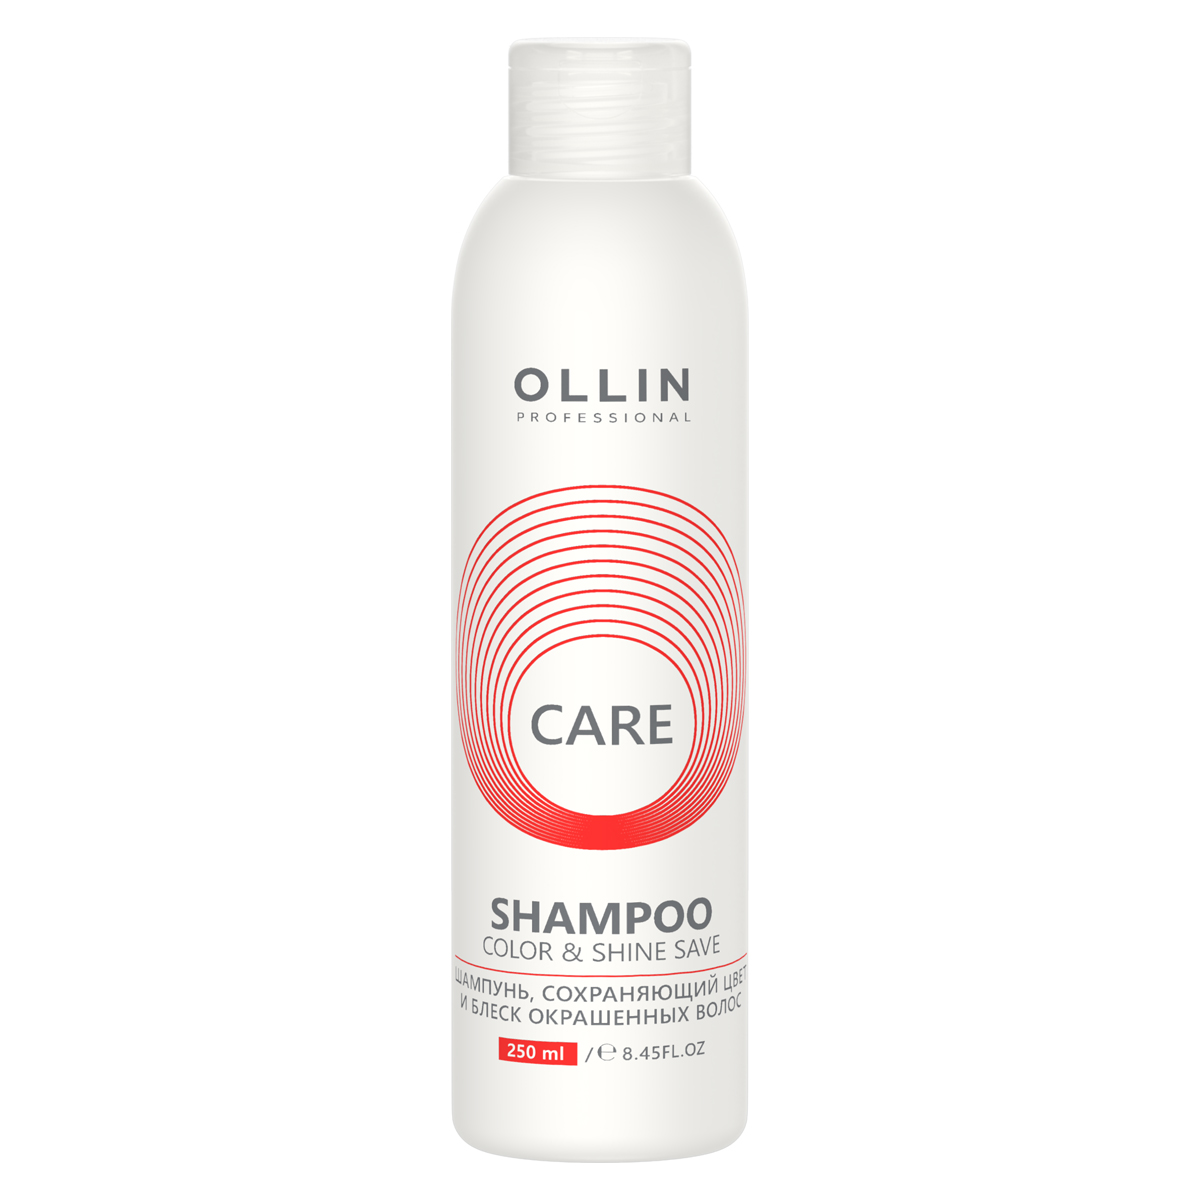 Ollin Professional Шампунь, сохраняющий цвет и блеск окрашен